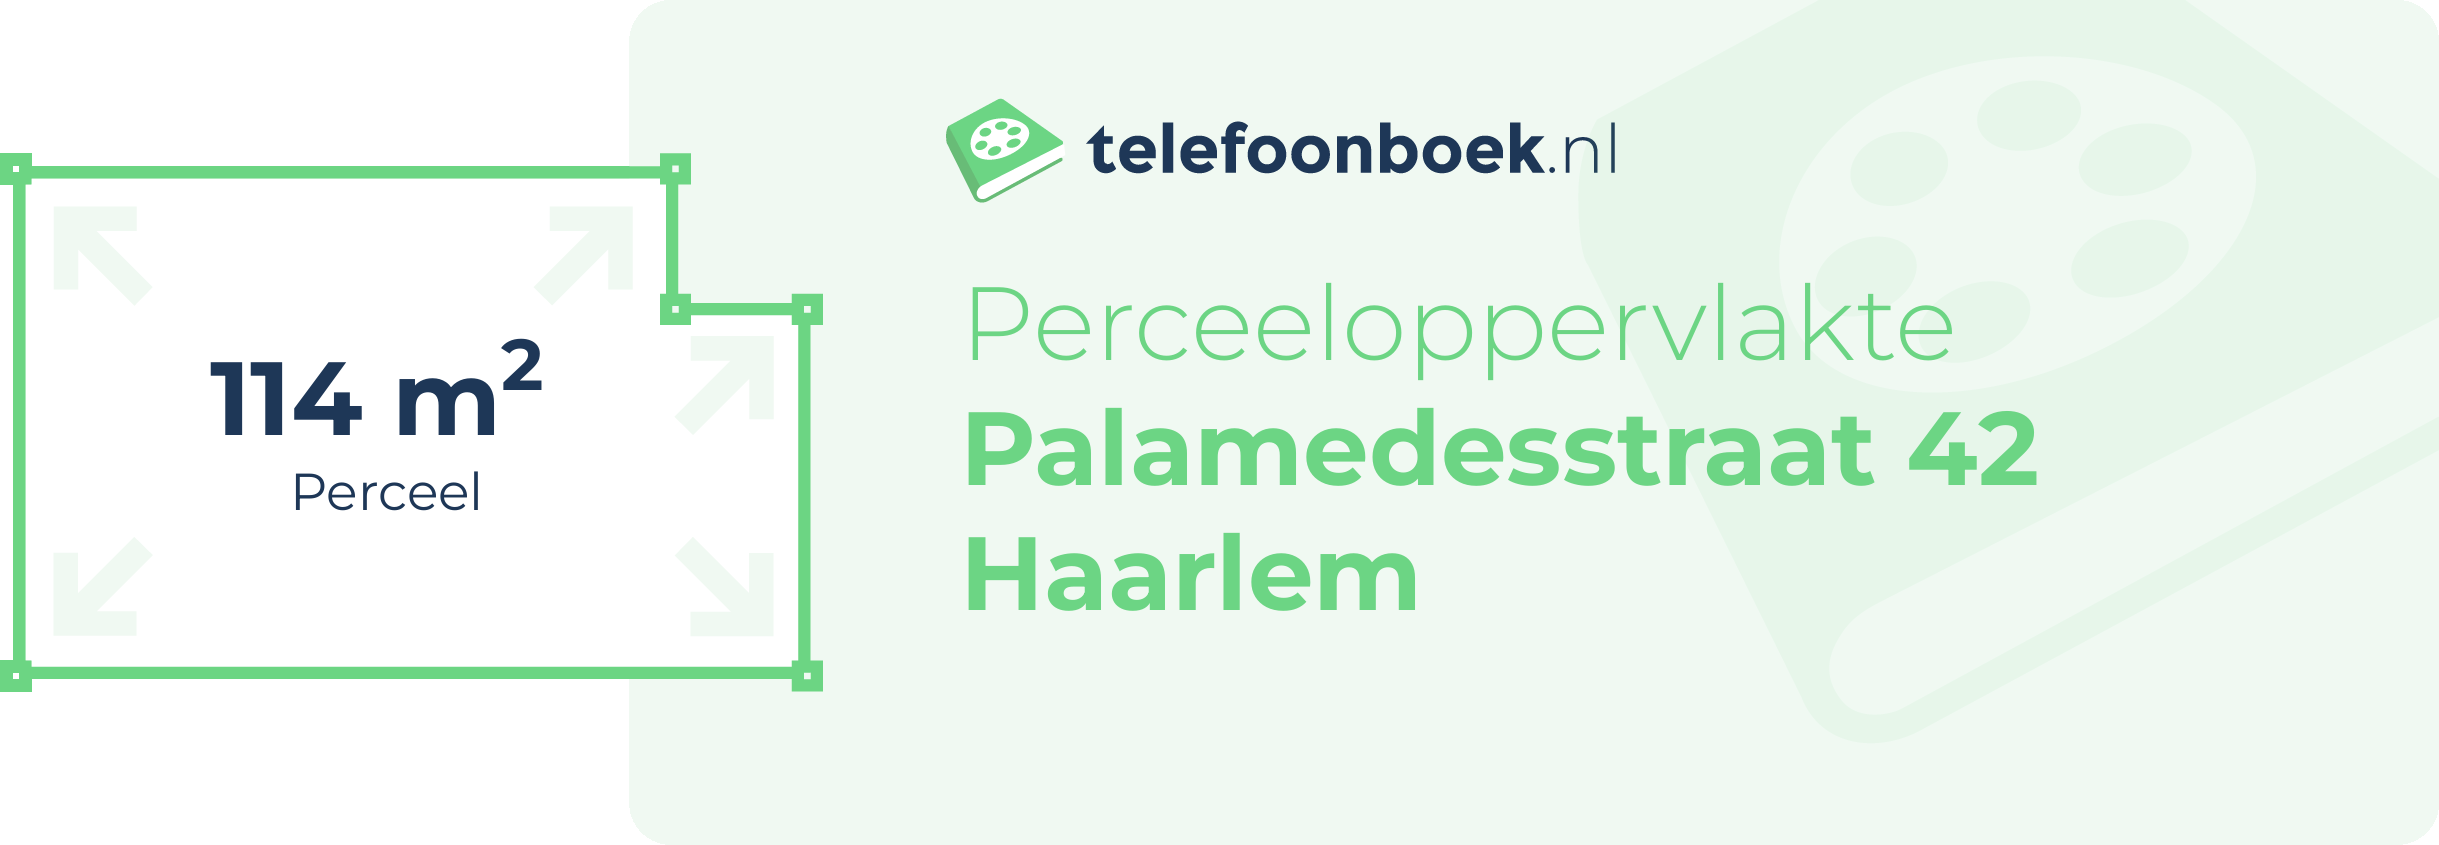 Perceeloppervlakte Palamedesstraat 42 Haarlem